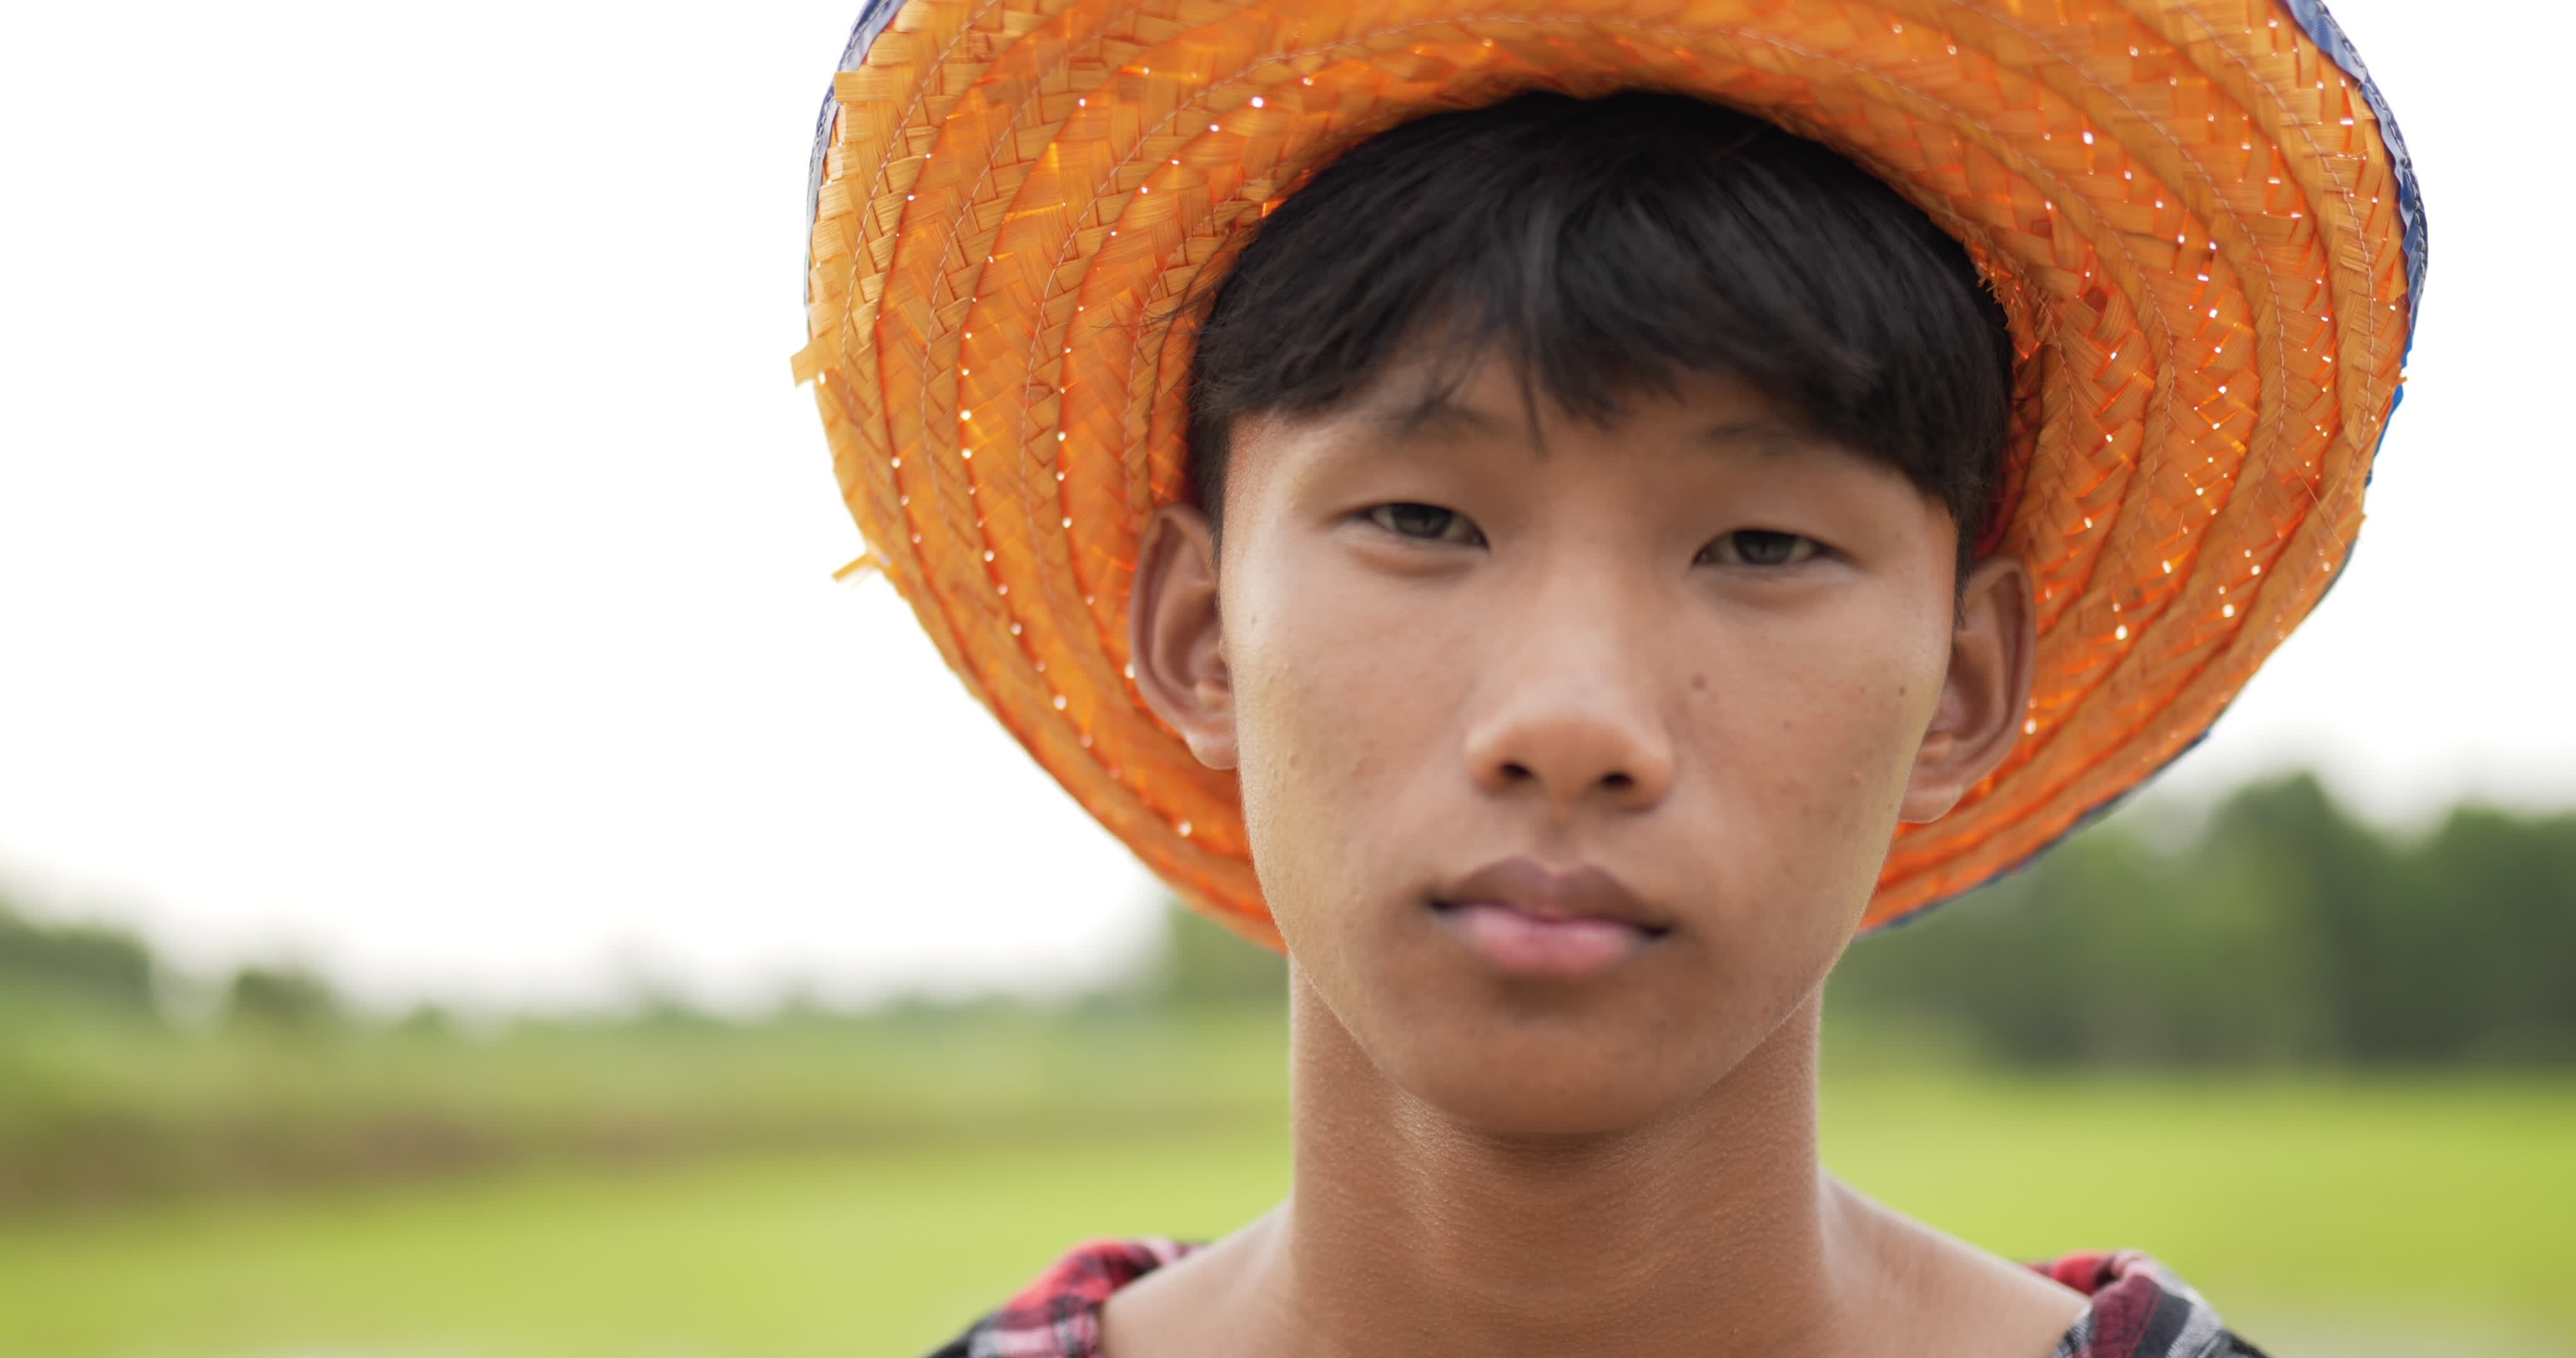 Nông dân – Những người nông dân là những anh hùng của đất nước, họ là người góp phần xây dựng nền kinh tế và đưa những sản phẩm nông nghiệp đến tay người tiêu dùng. Hãy cùng chiêm ngưỡng những hình ảnh của những người nông dân miền quê Việt Nam để cảm nhận sự hiếu khách và gian nan trong công việc của họ.